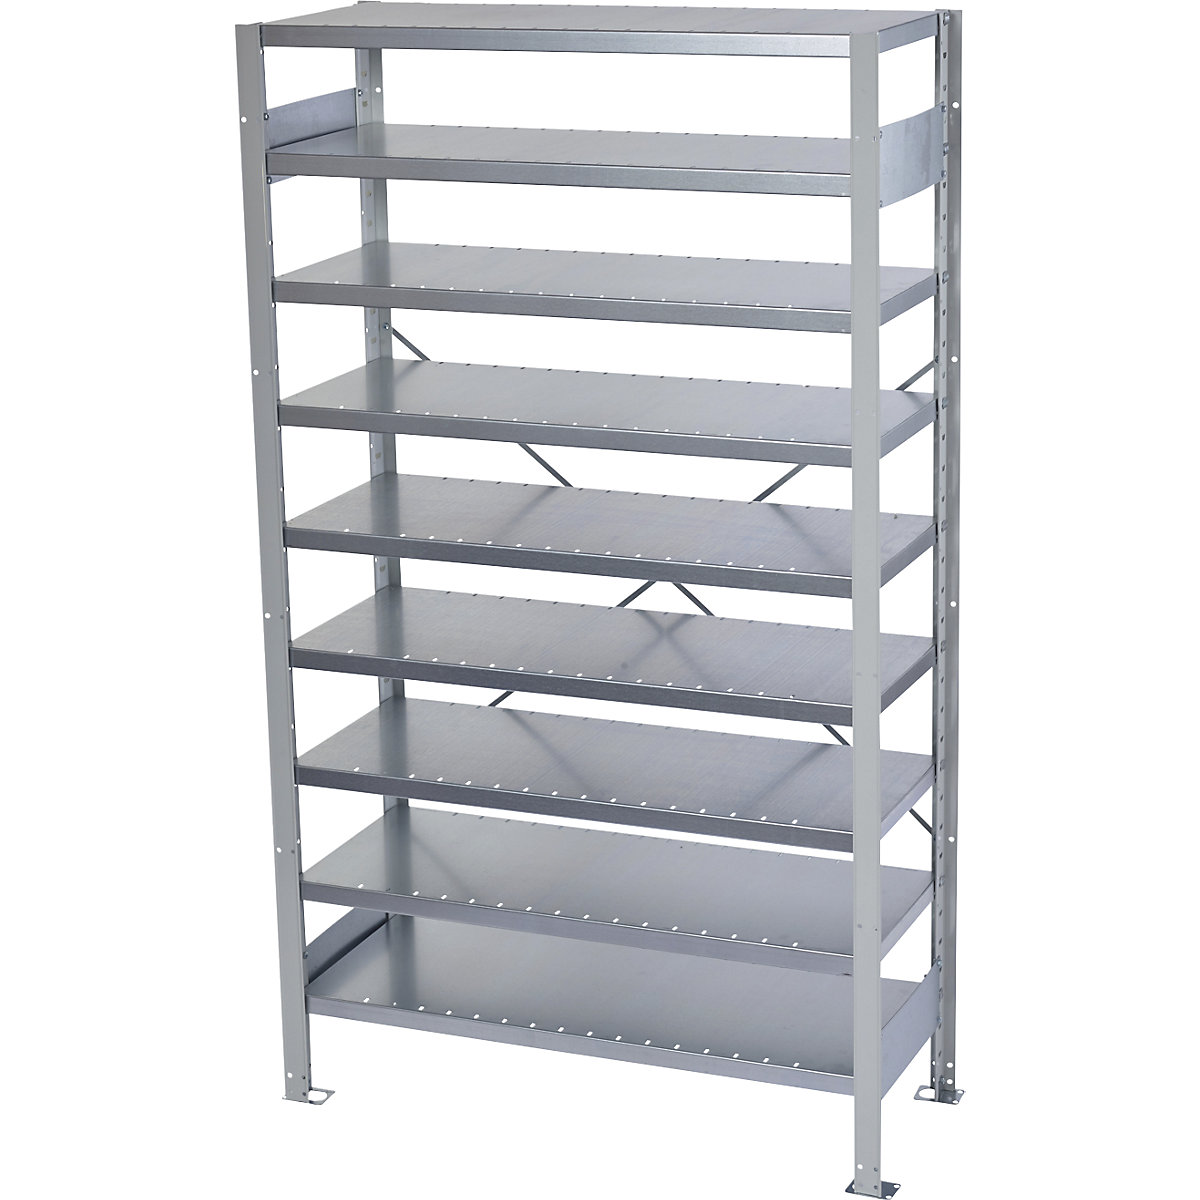 Boltless shelving unit for shelf bins – STEMO